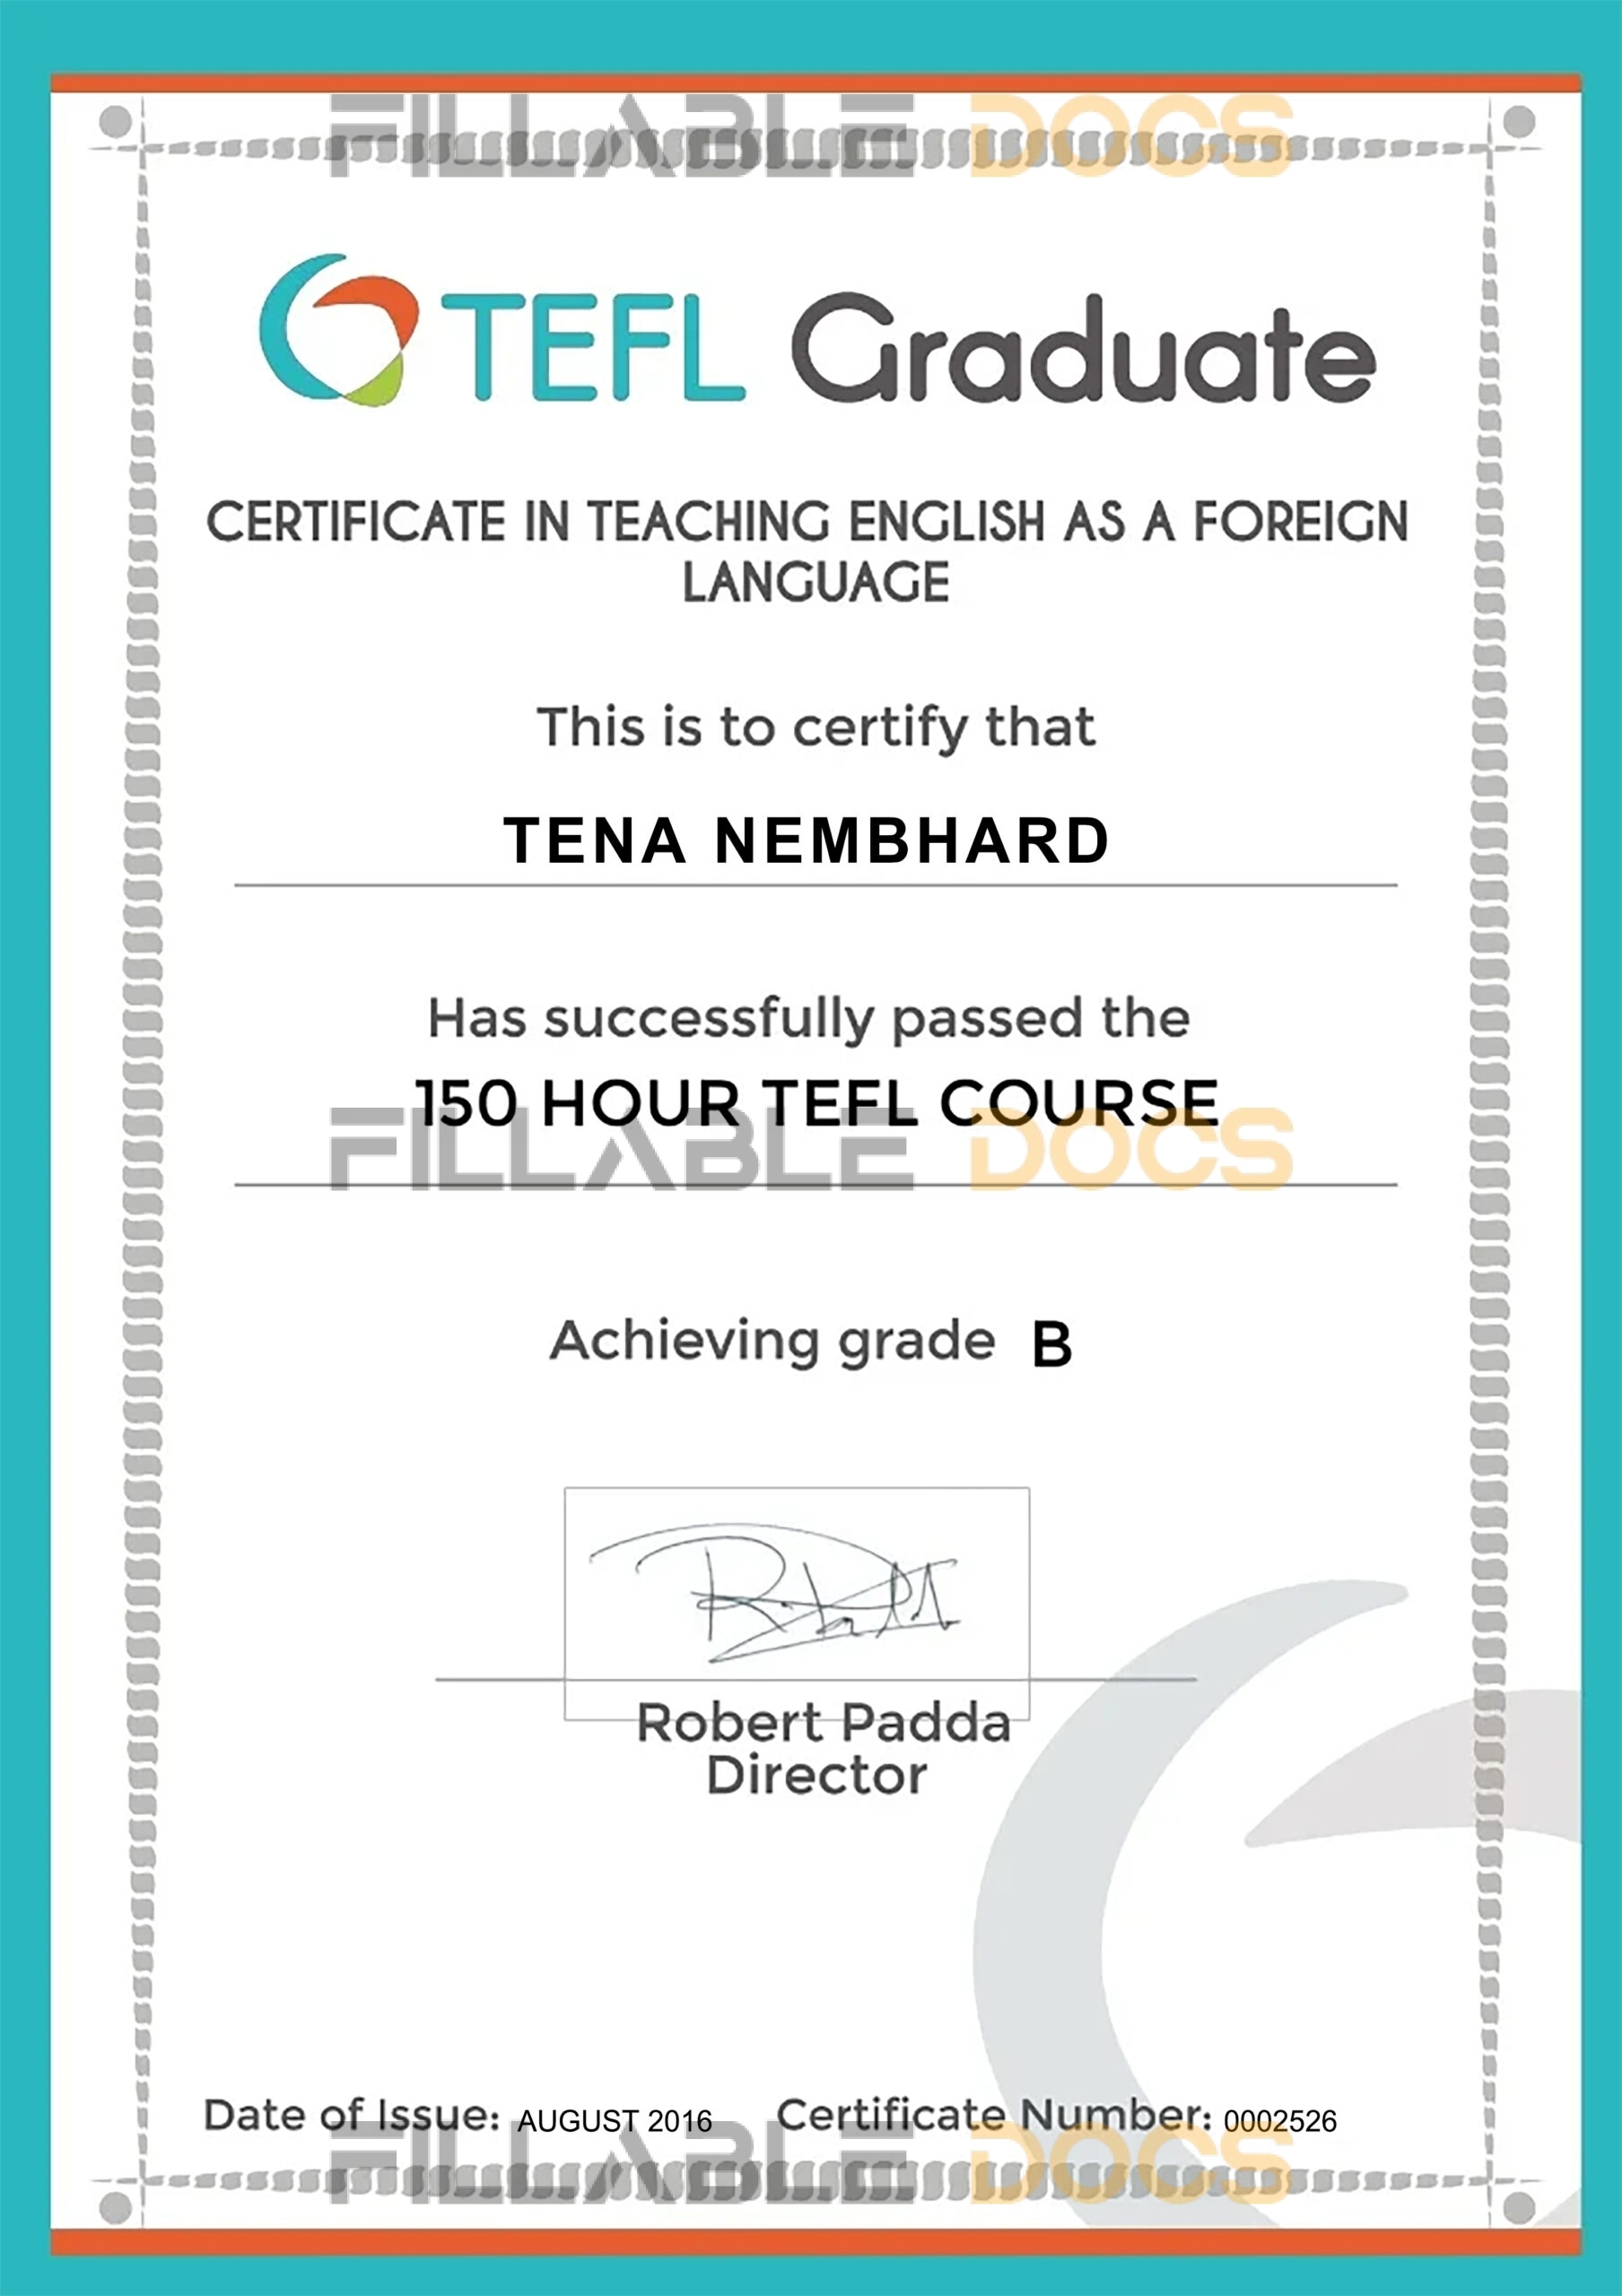 TEFL Graduate Certificate PSD Template